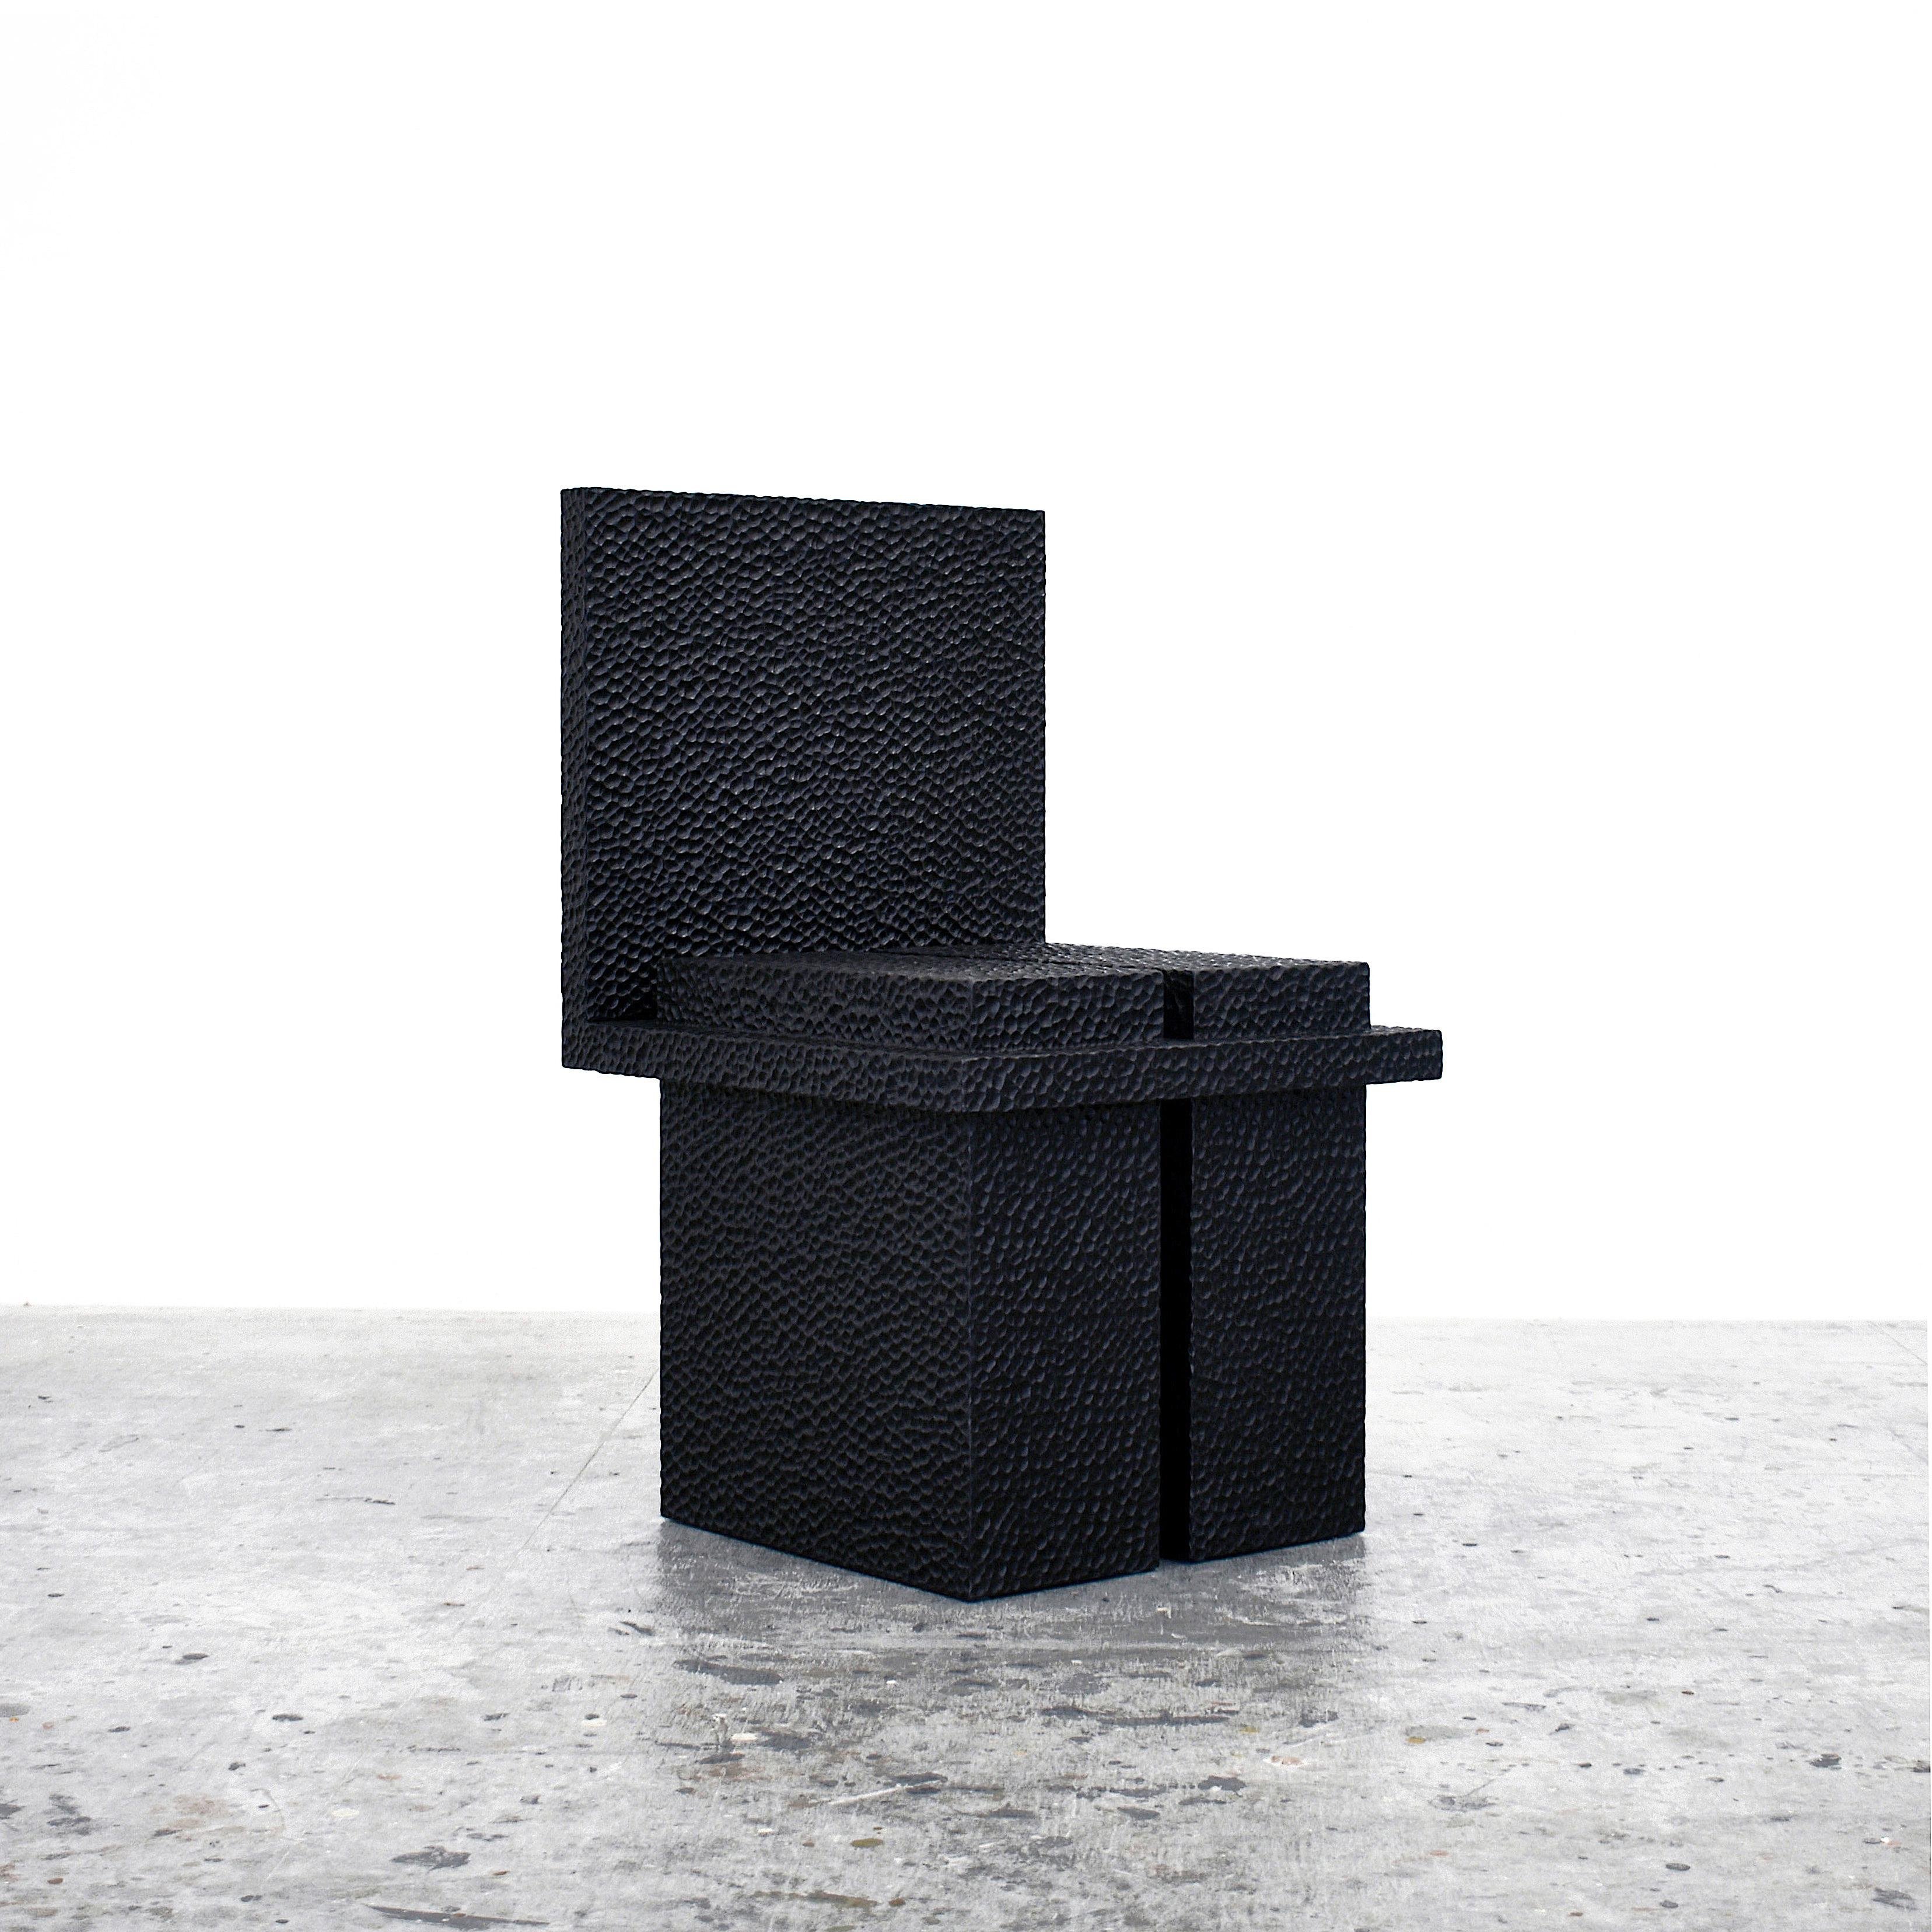 C2-Stuhl von John Eric Byers.
Abmessungen: 49,5 x 45,8 x 77,5 cm
MATERIALIEN: Geschnitztes geschwärztes Ahornholz

Alle Werke werden individuell auf Bestellung handgefertigt.

John Eric Byers schafft geometrisch inspirierte Stücke, die